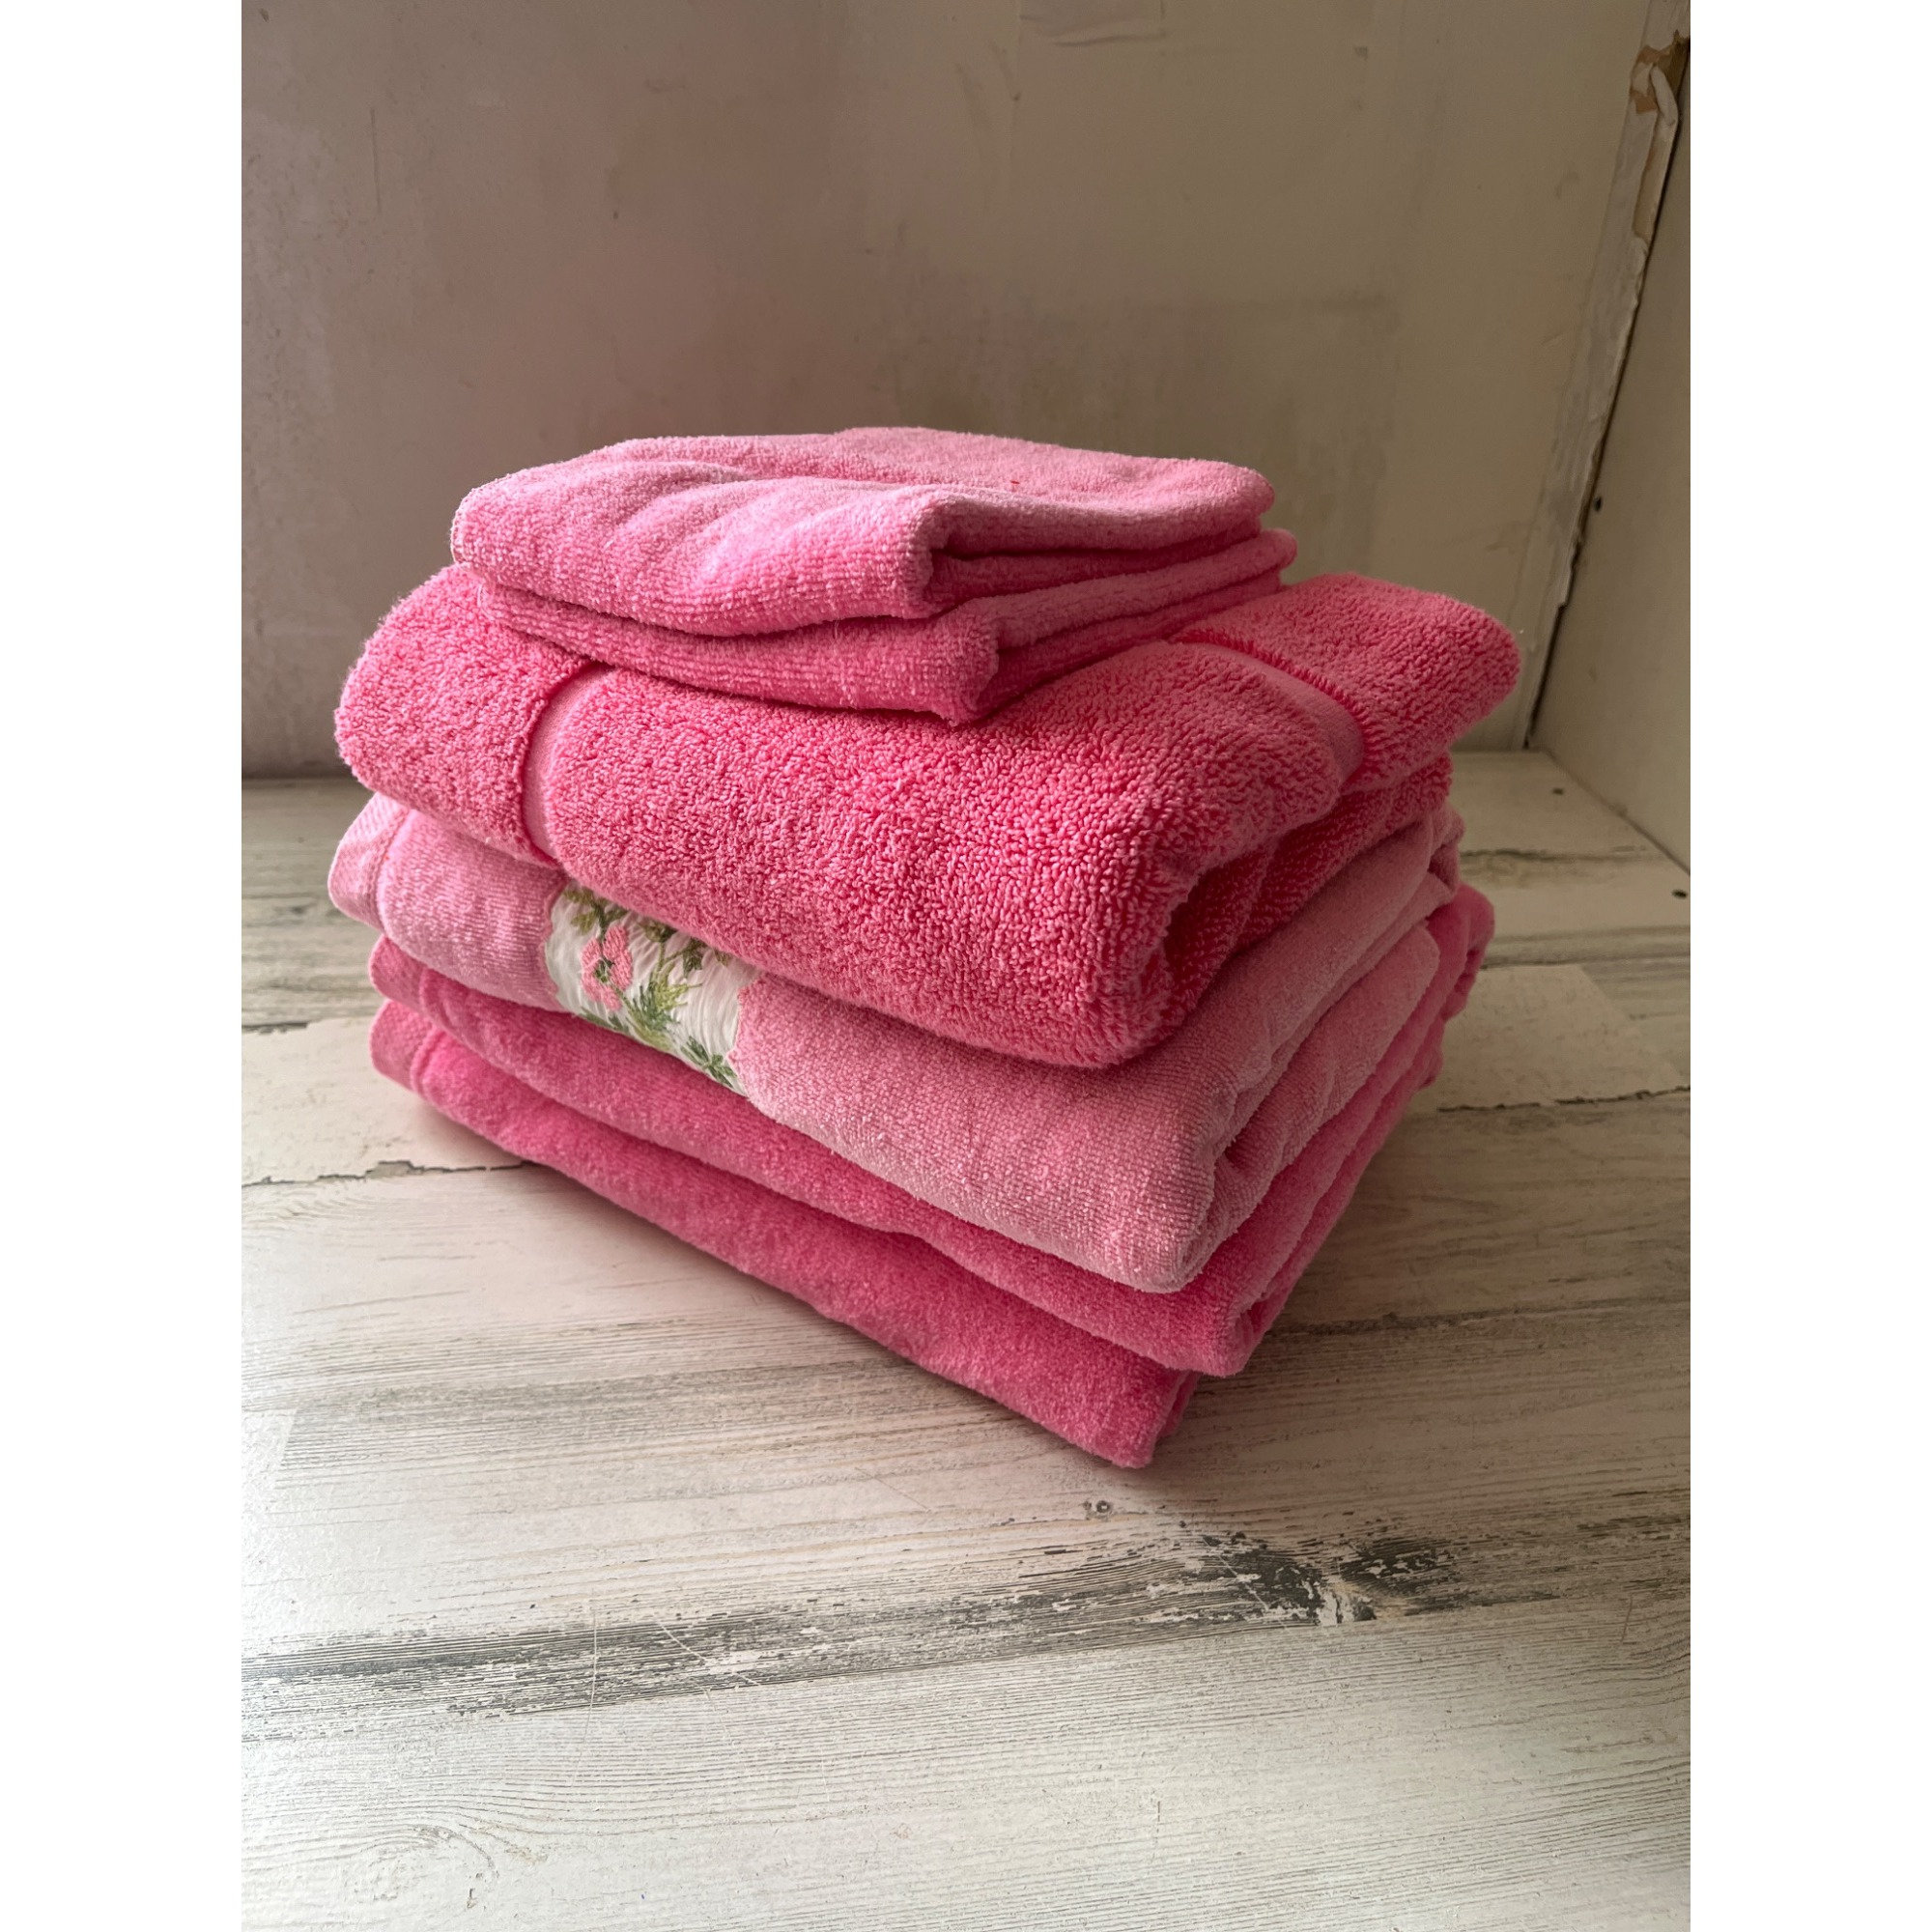 Fieldcrest Bath Towel Pink Blue Floral Roses 100% Cotton USA Royal Velvet  VGC!